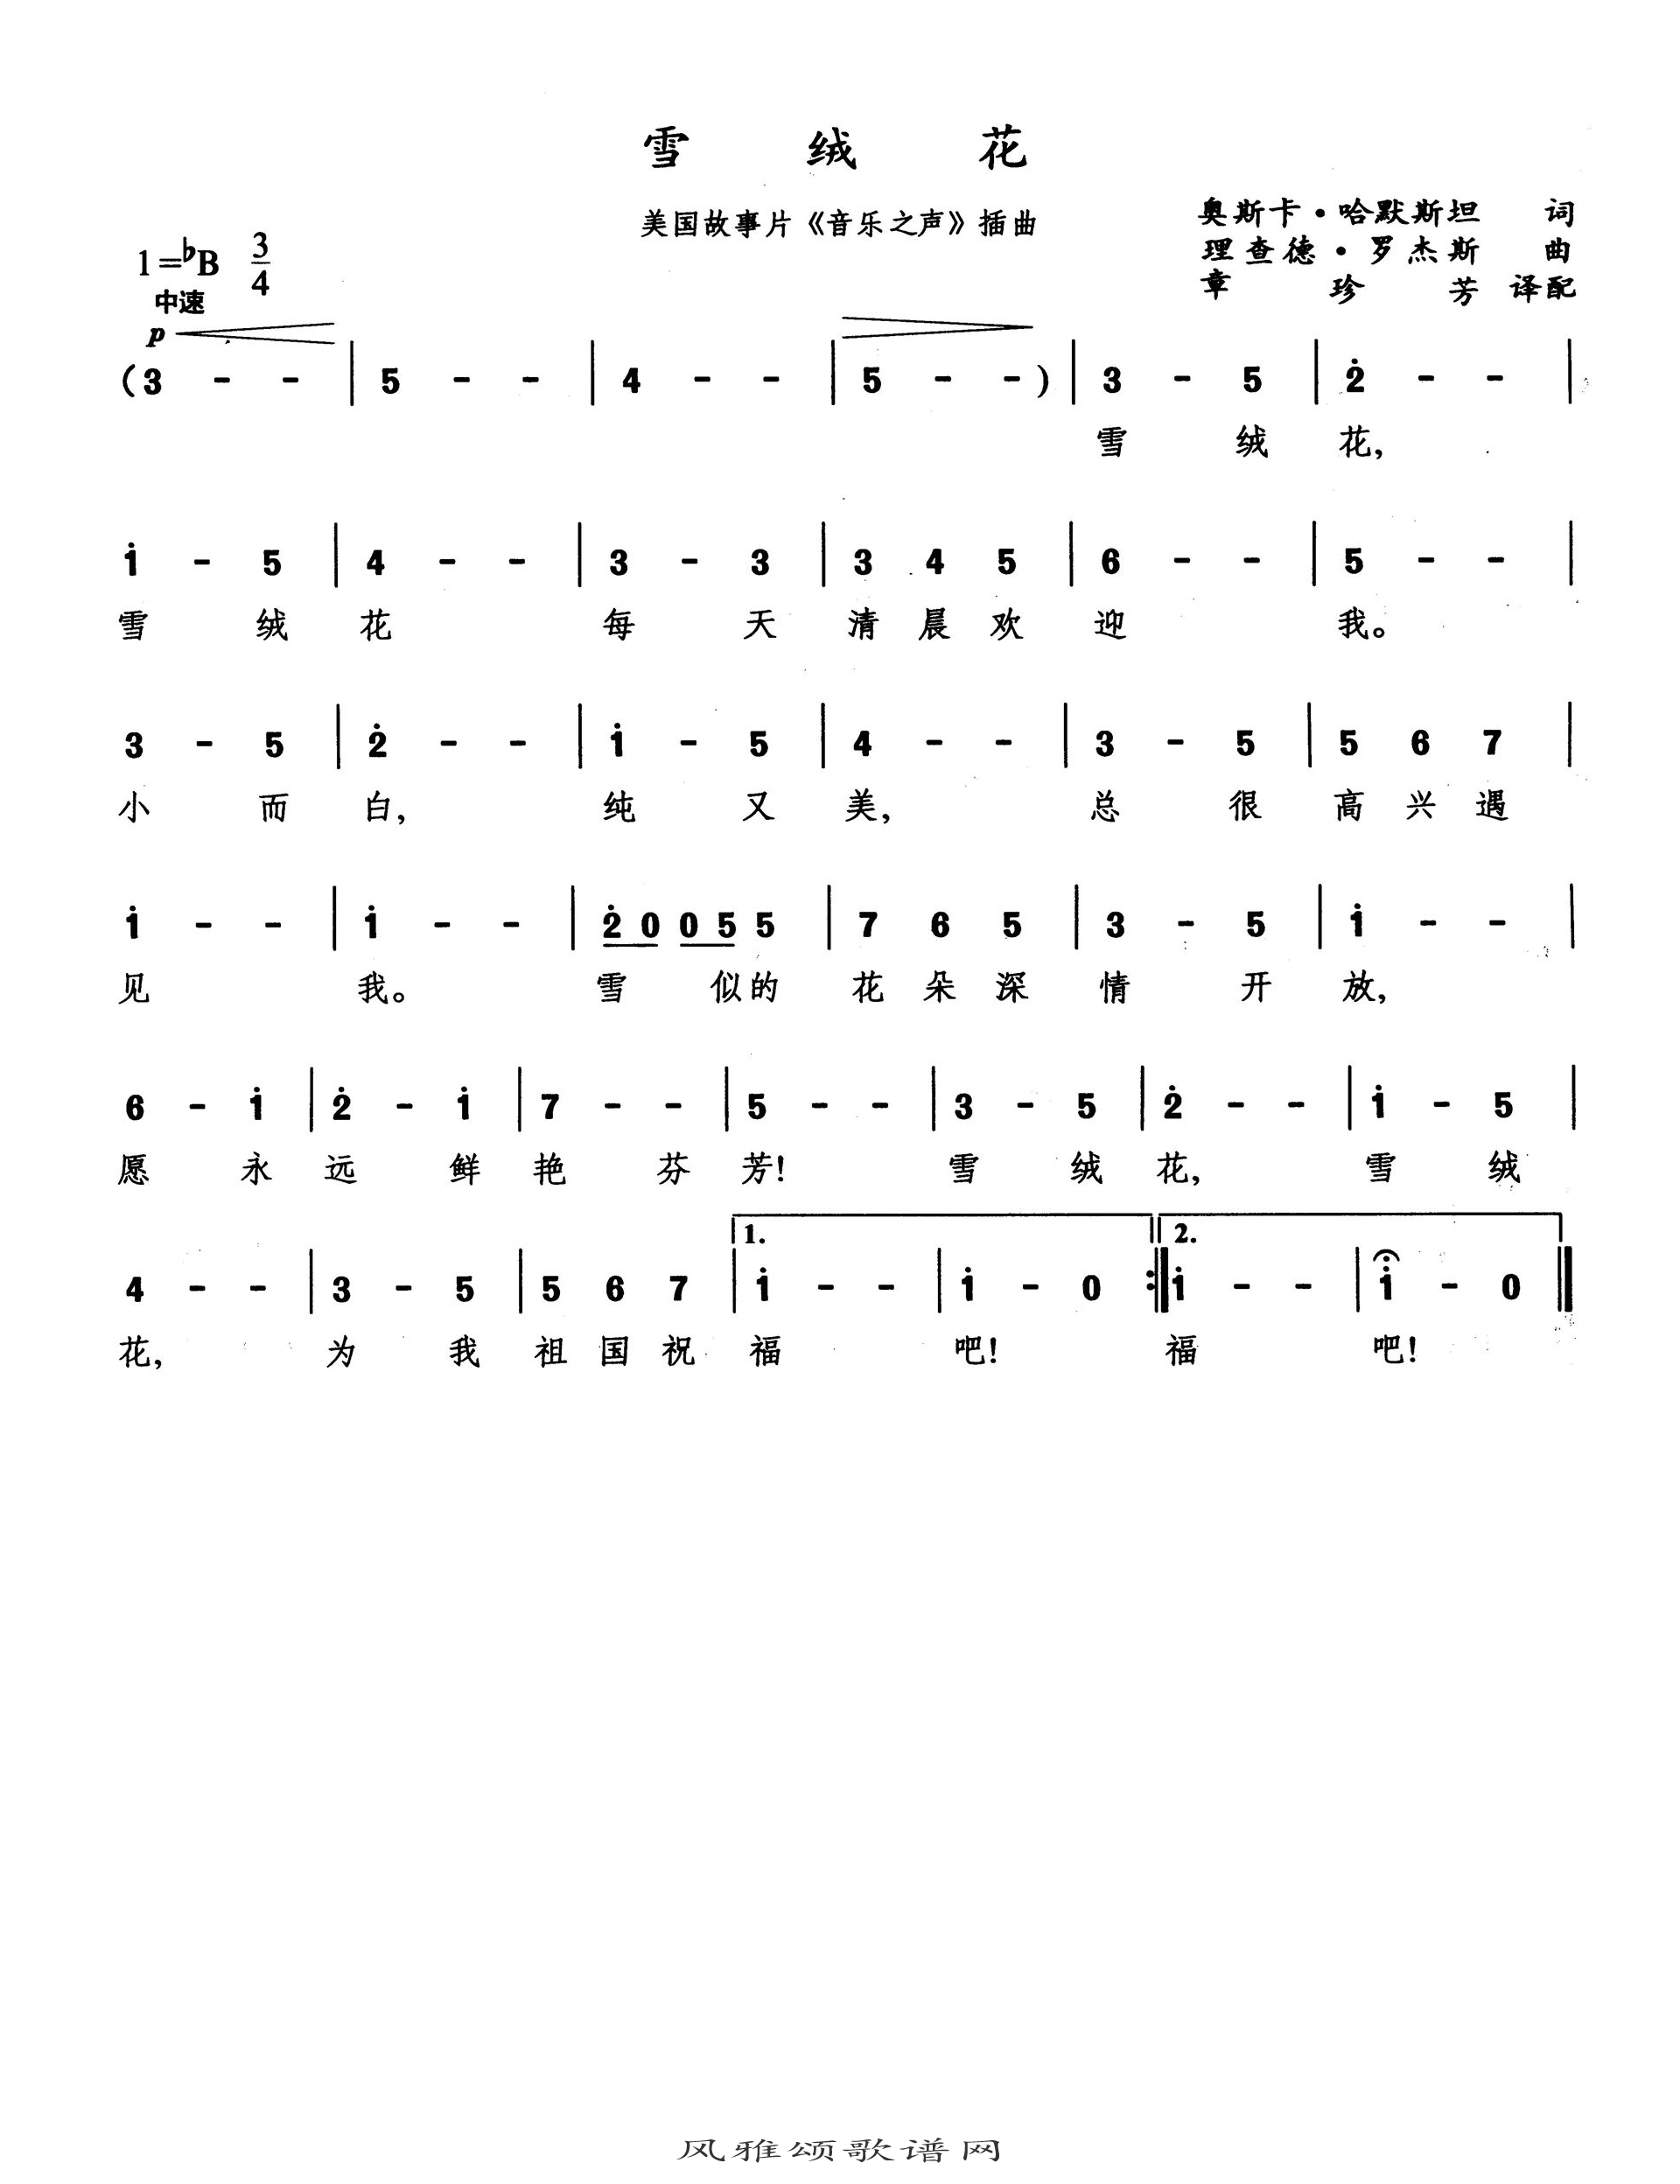 雪绒花-Edelweiss五线谱预览1-钢琴谱文件（五线谱、双手简谱、数字谱、Midi、PDF）免费下载